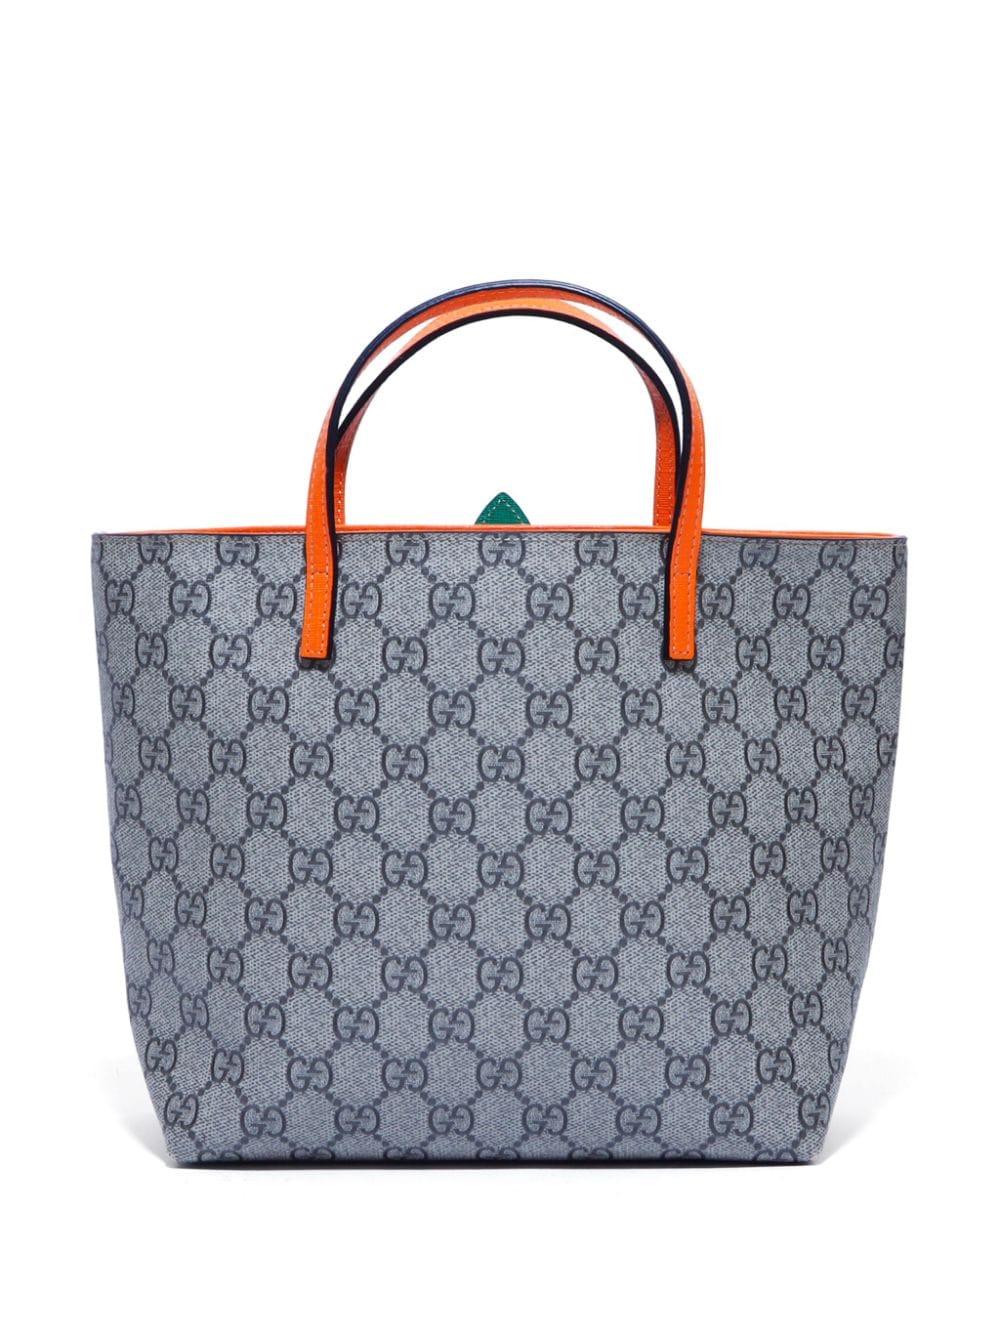 Gucci Pre-Owned GG Supreme Pineapple tote bag - Bruin